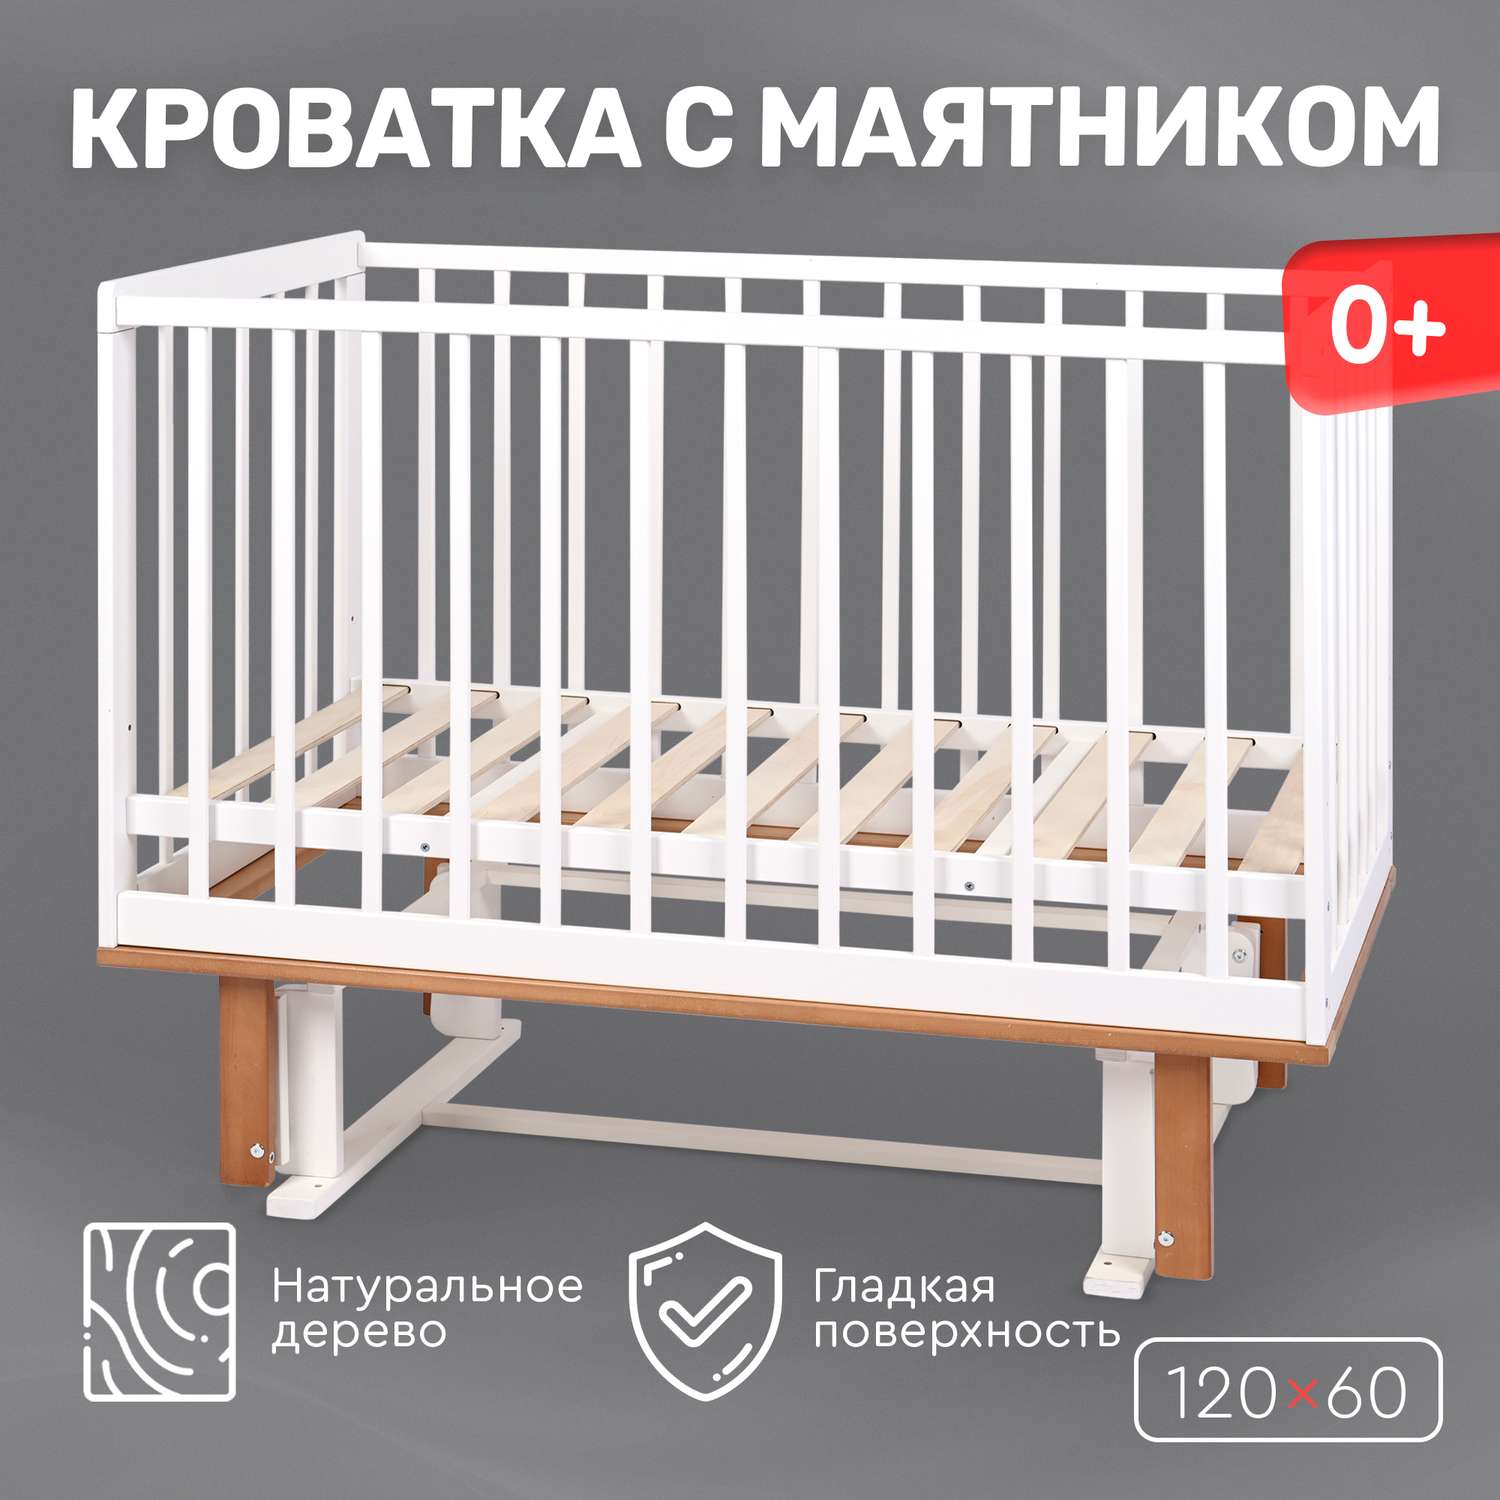 Стандартные размеры детской кровати